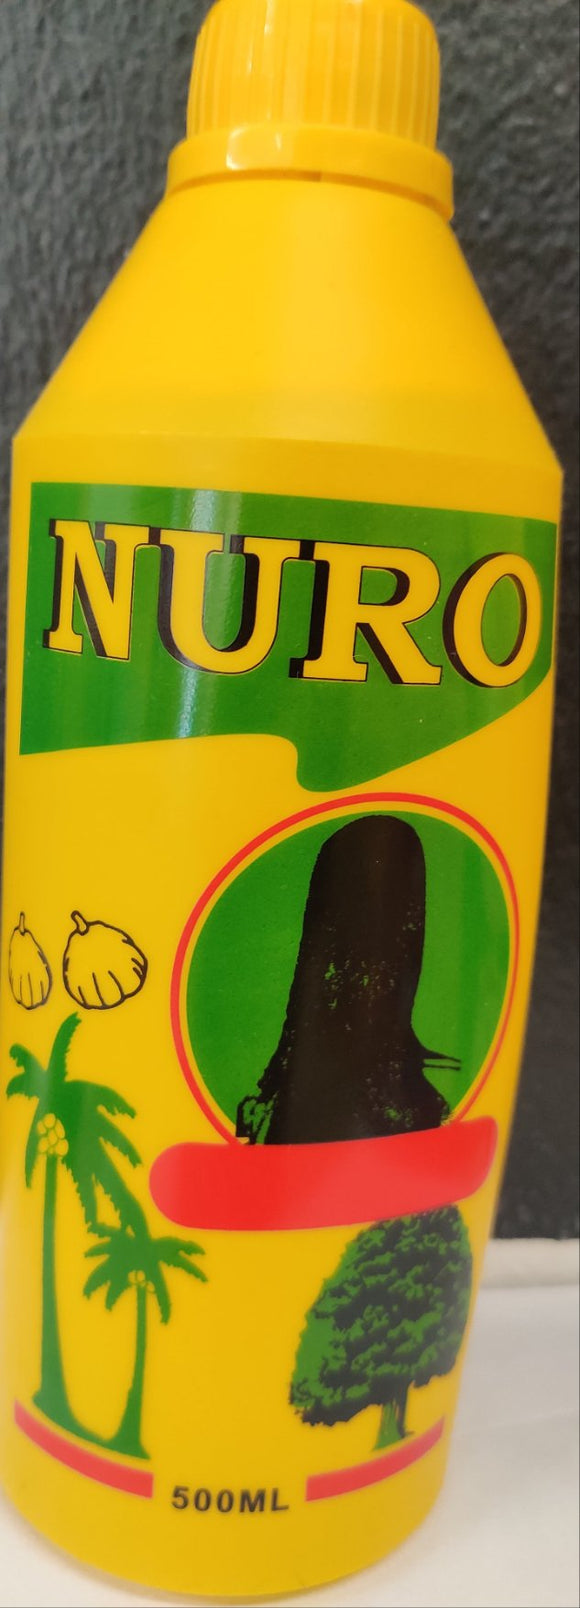 Nuro hair oil